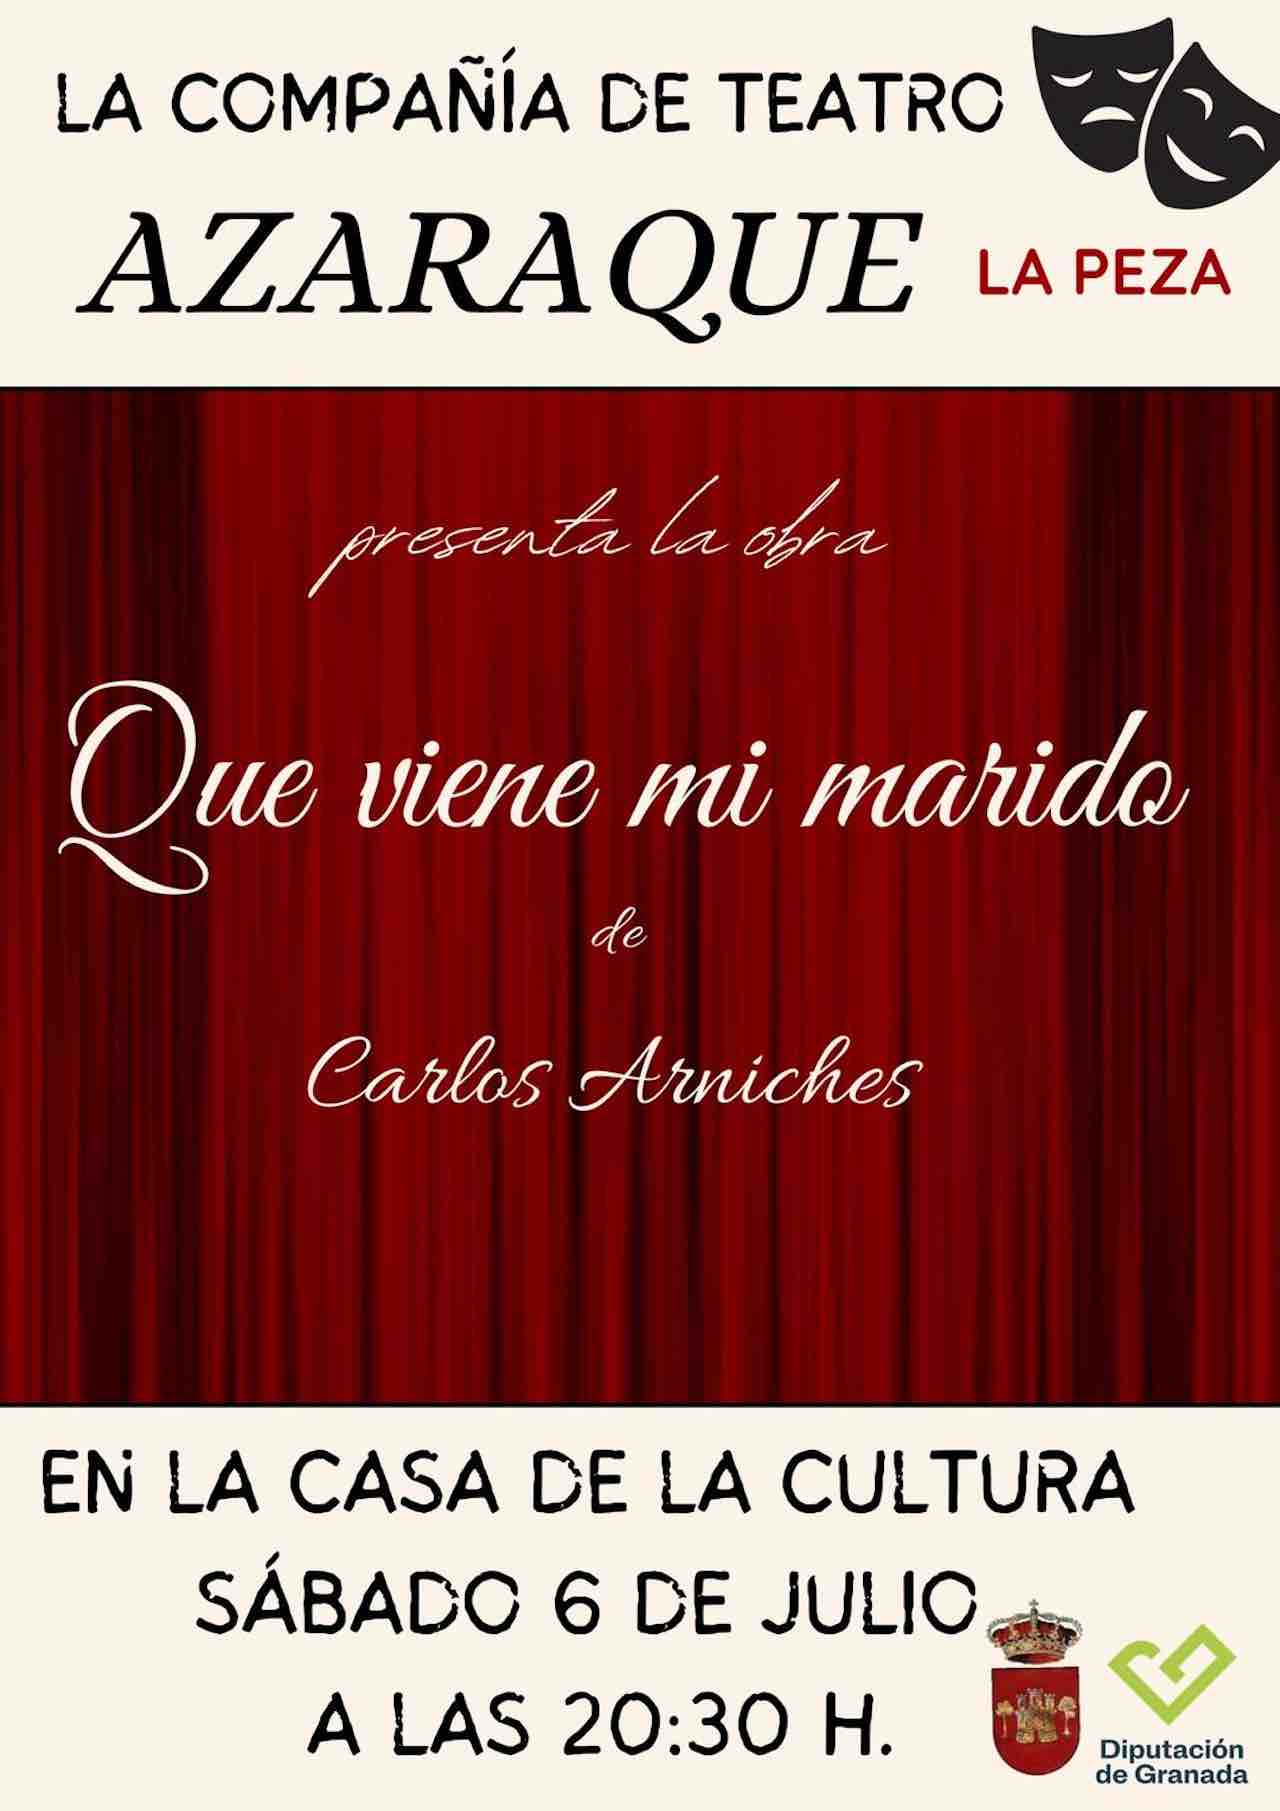 Teatro Azaraque Presenta: "Que Viene mi Marido" de Carlos Arniches